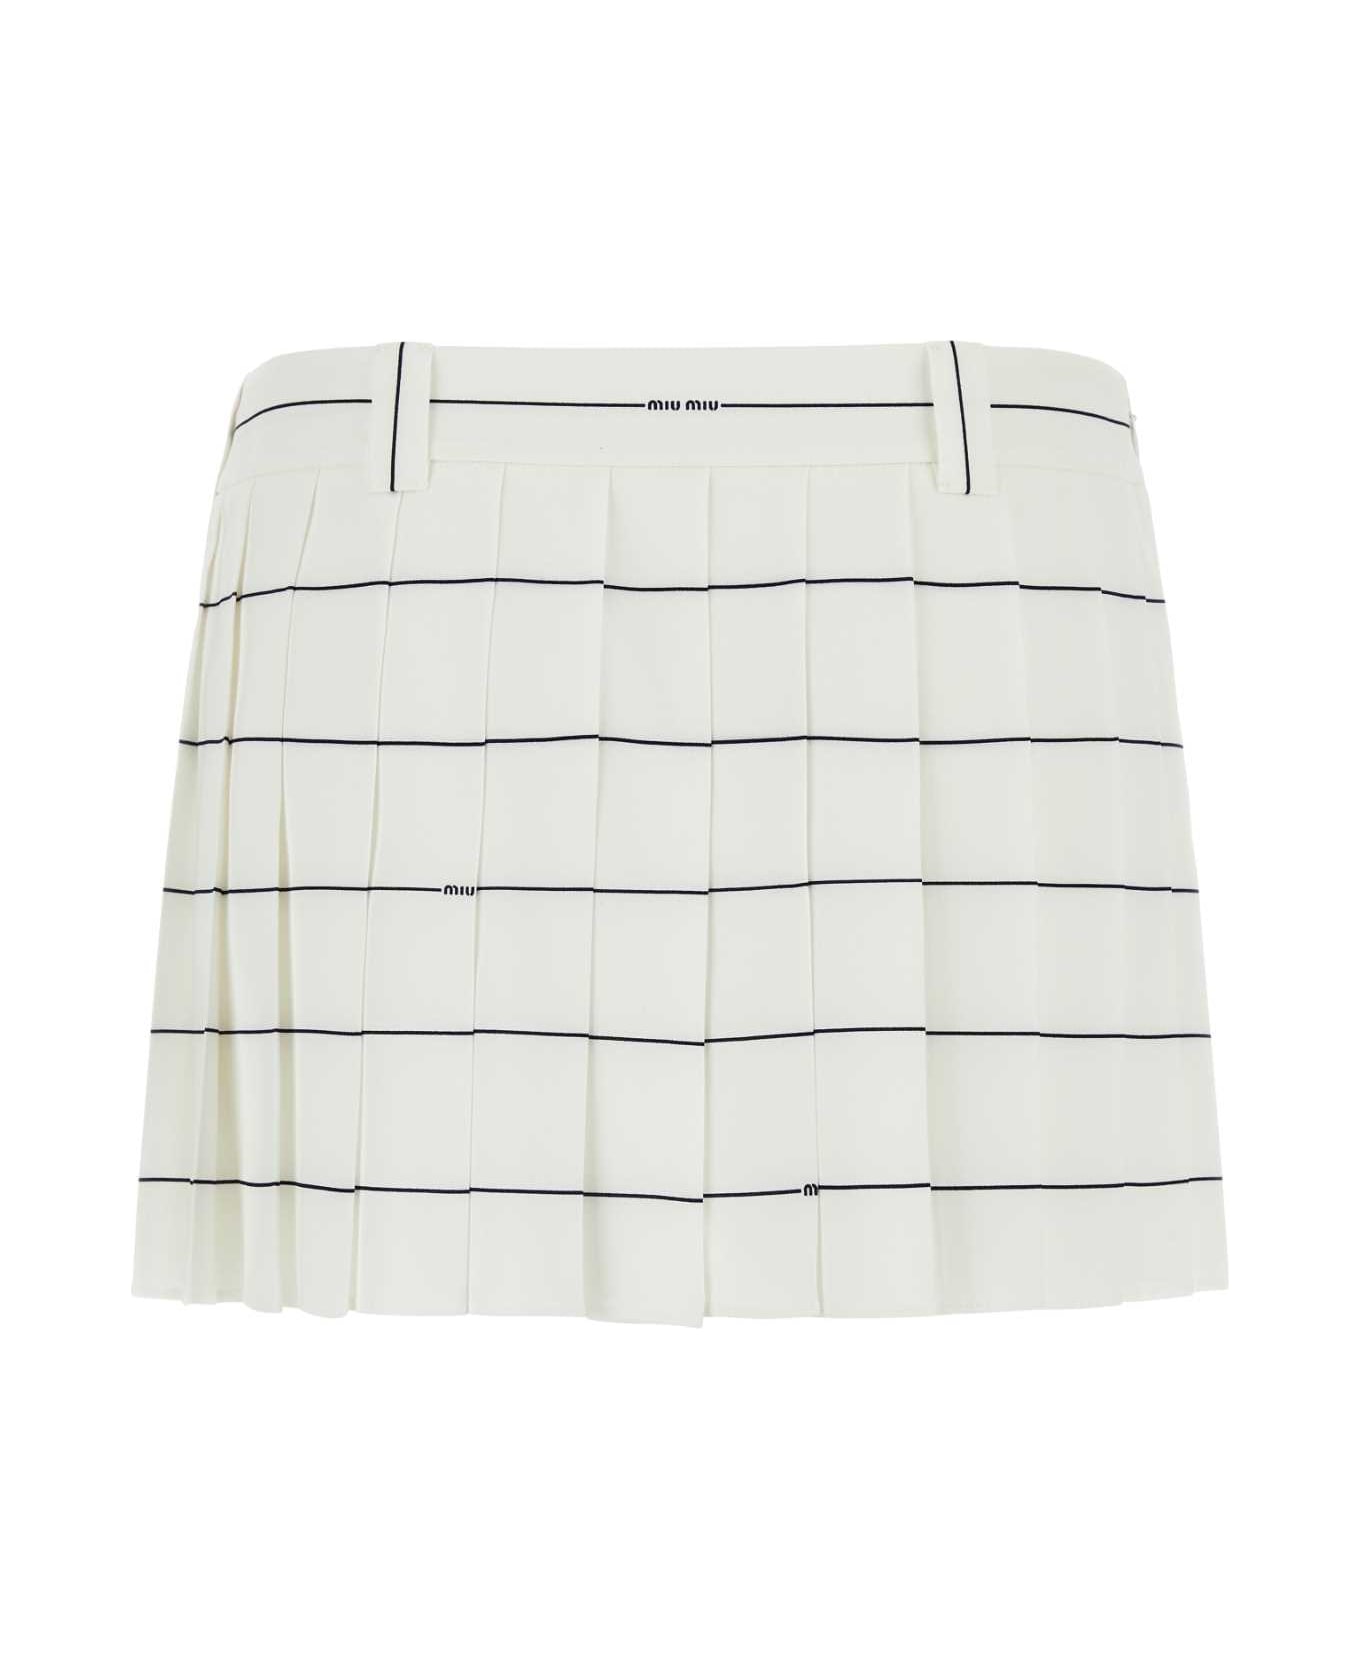 Miu Miu Printed Crepe Mini Skirt - BIANCOBLU スカート